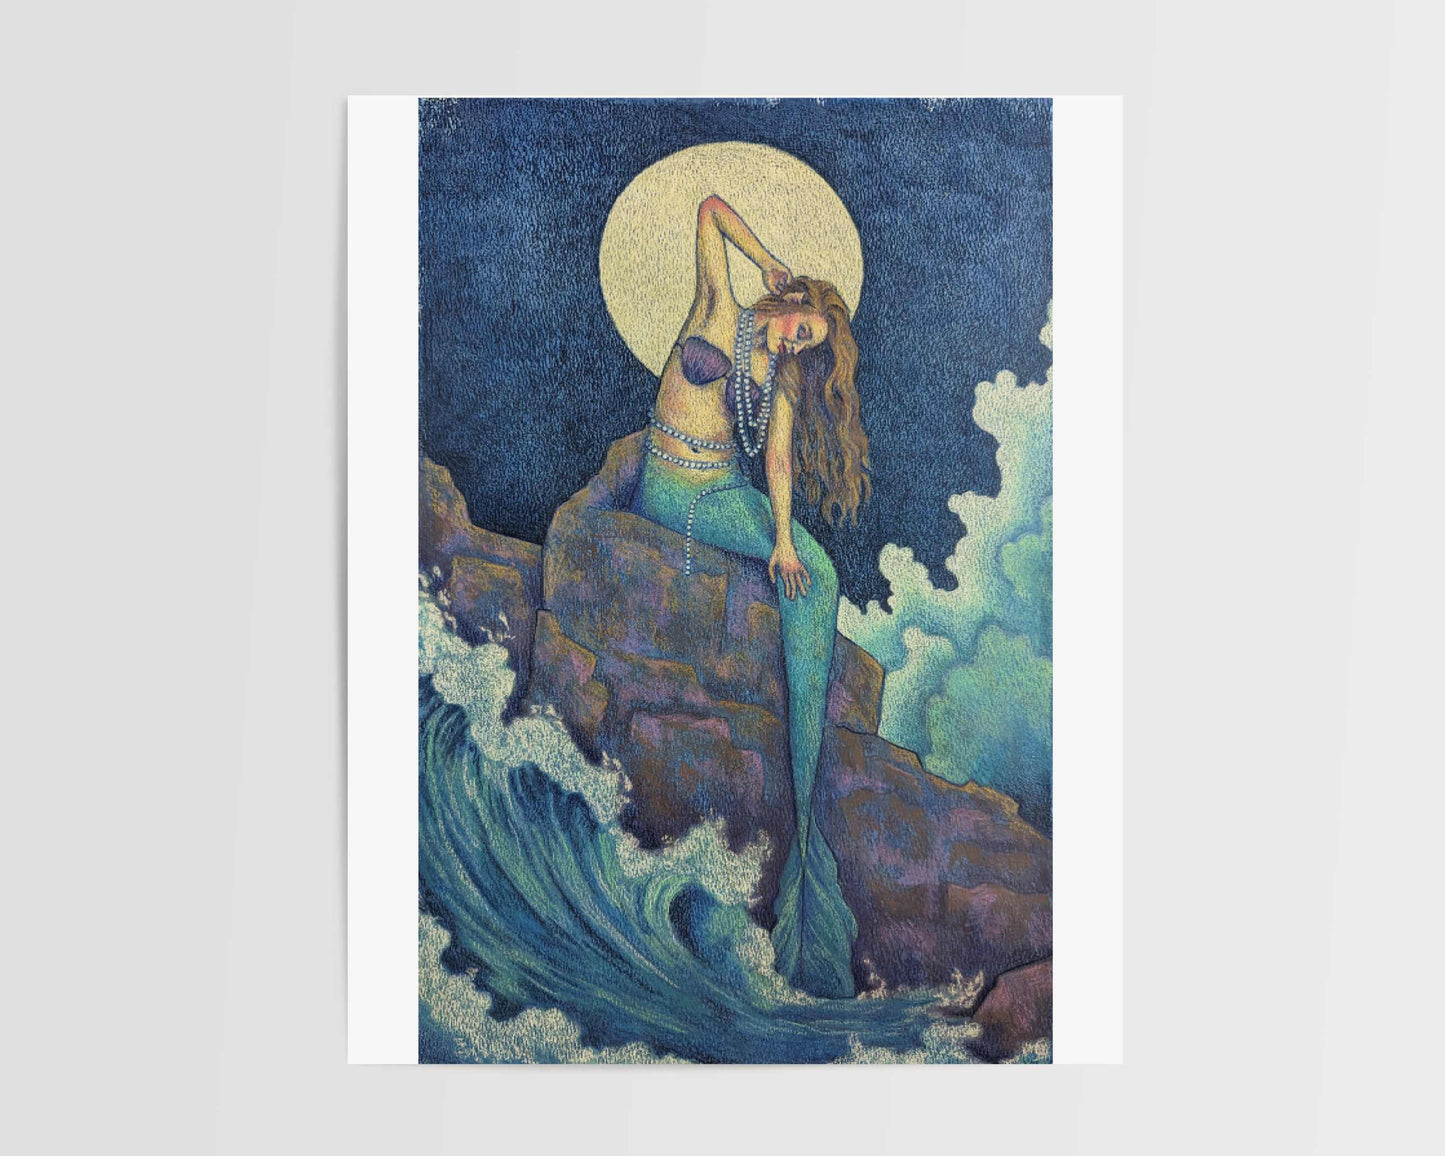 Magical Mermaid Print